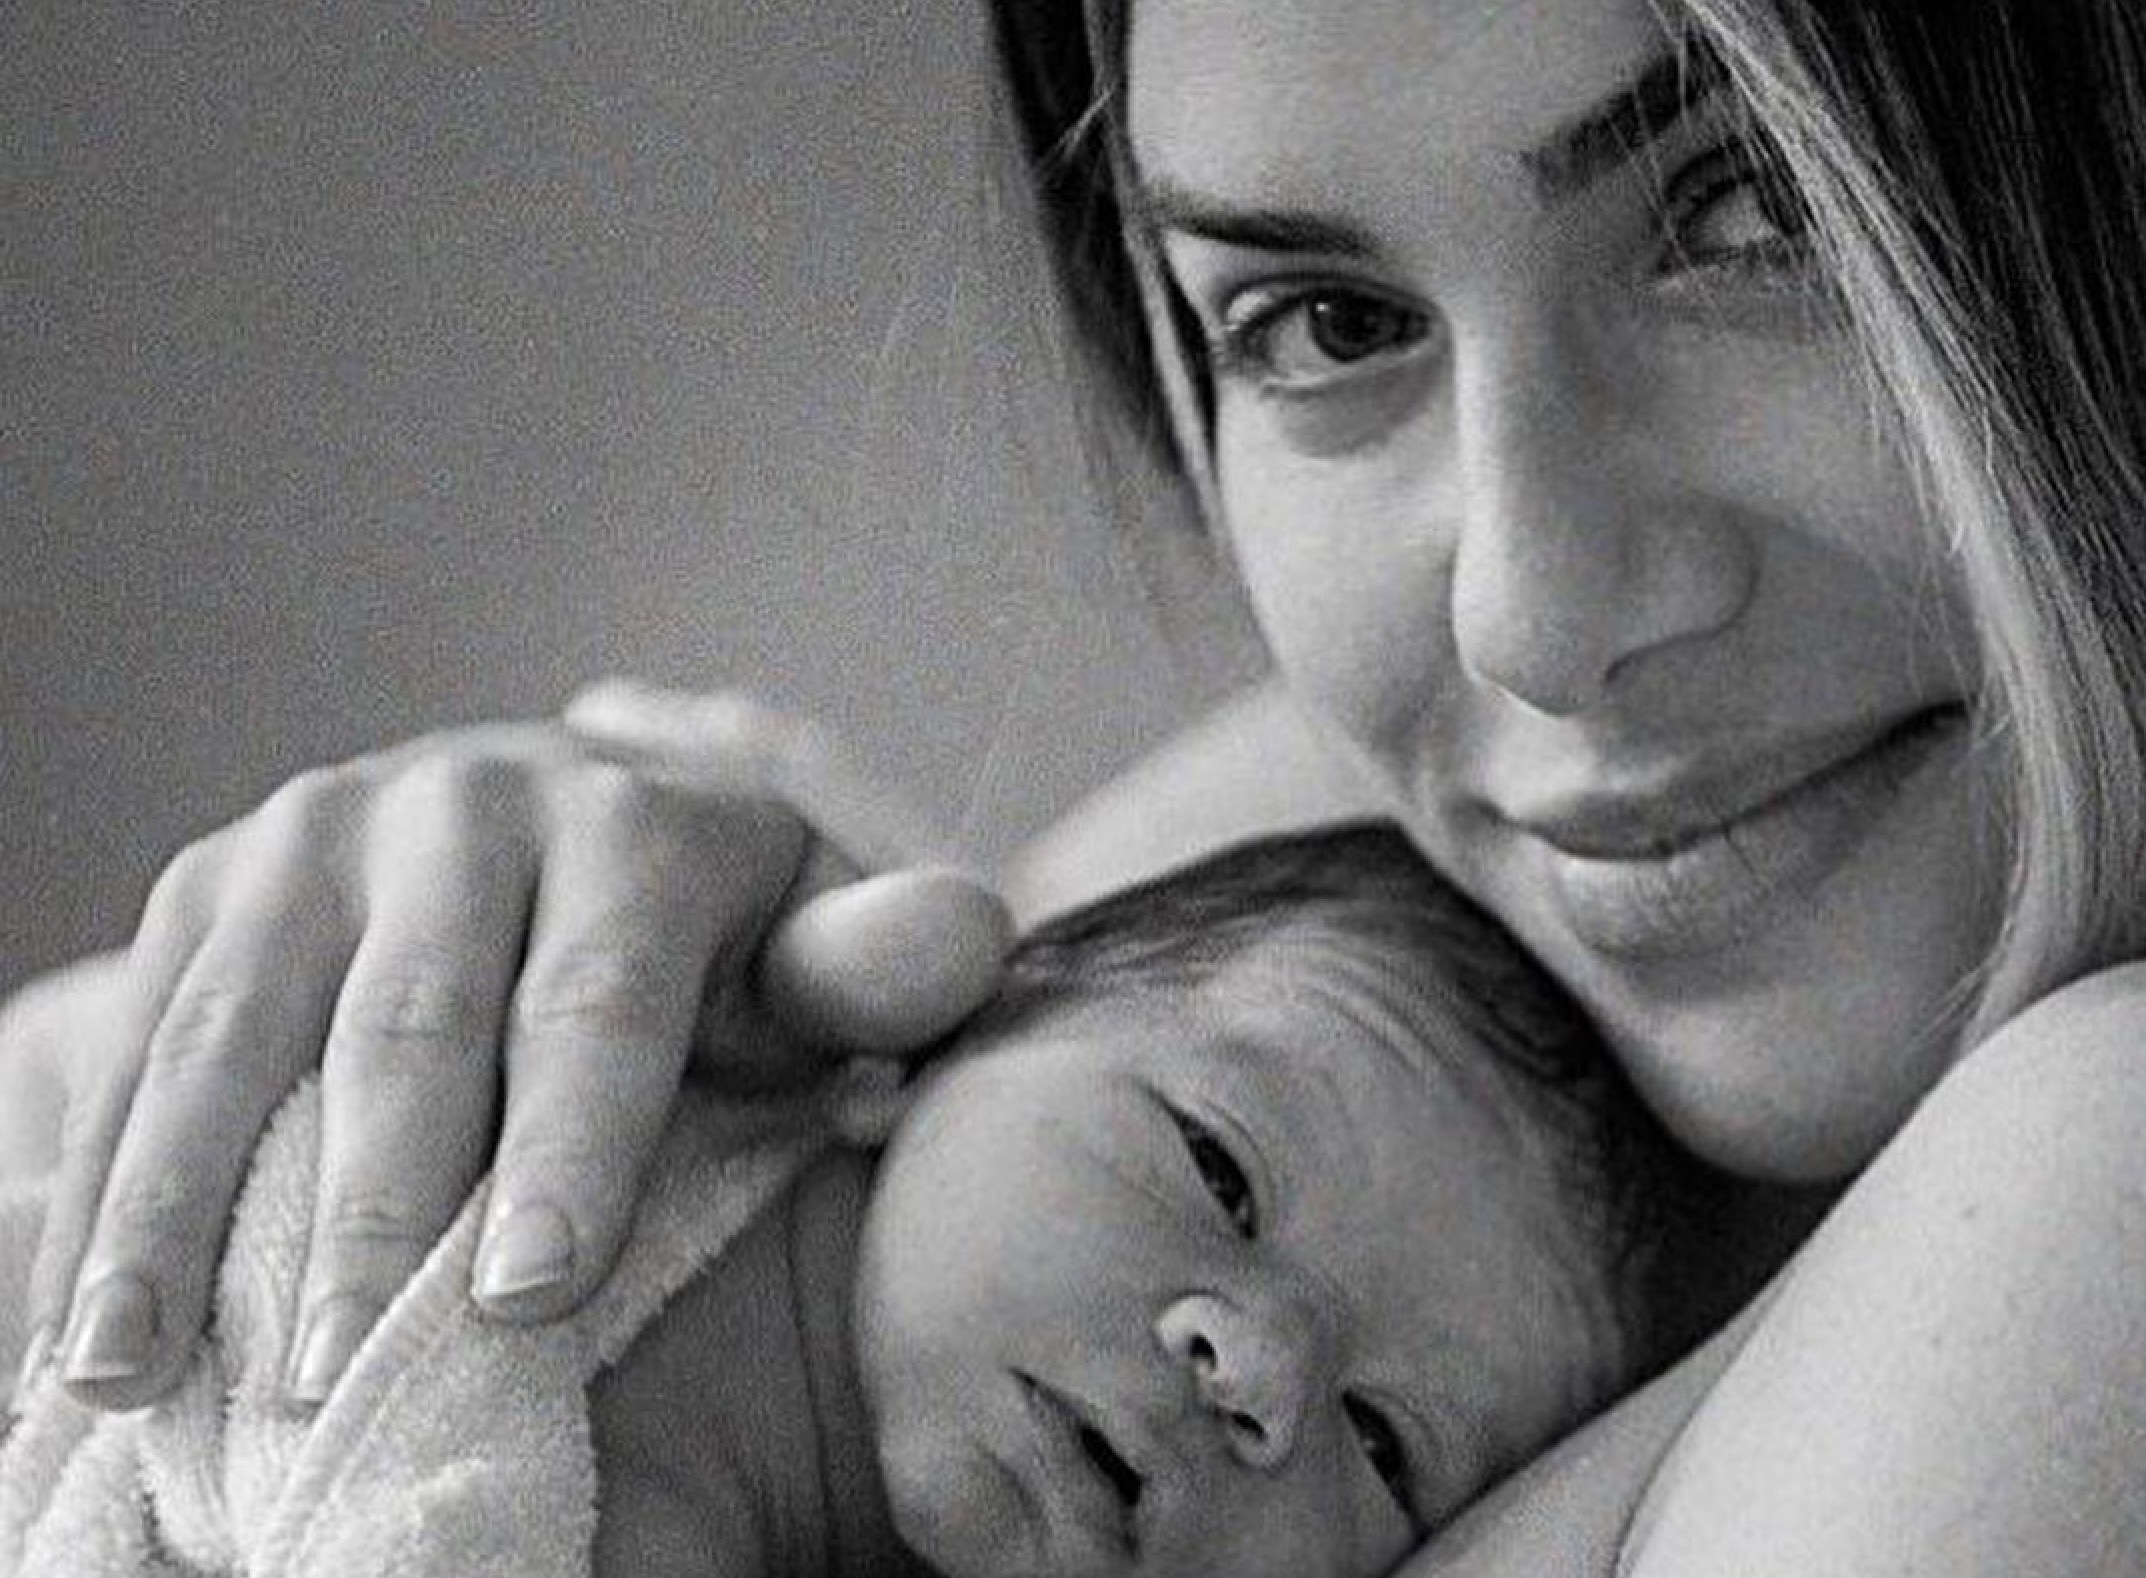 Imagem referente a Maternidade recebe reclamações após Giovanna Ewbank divulgar foto do filho